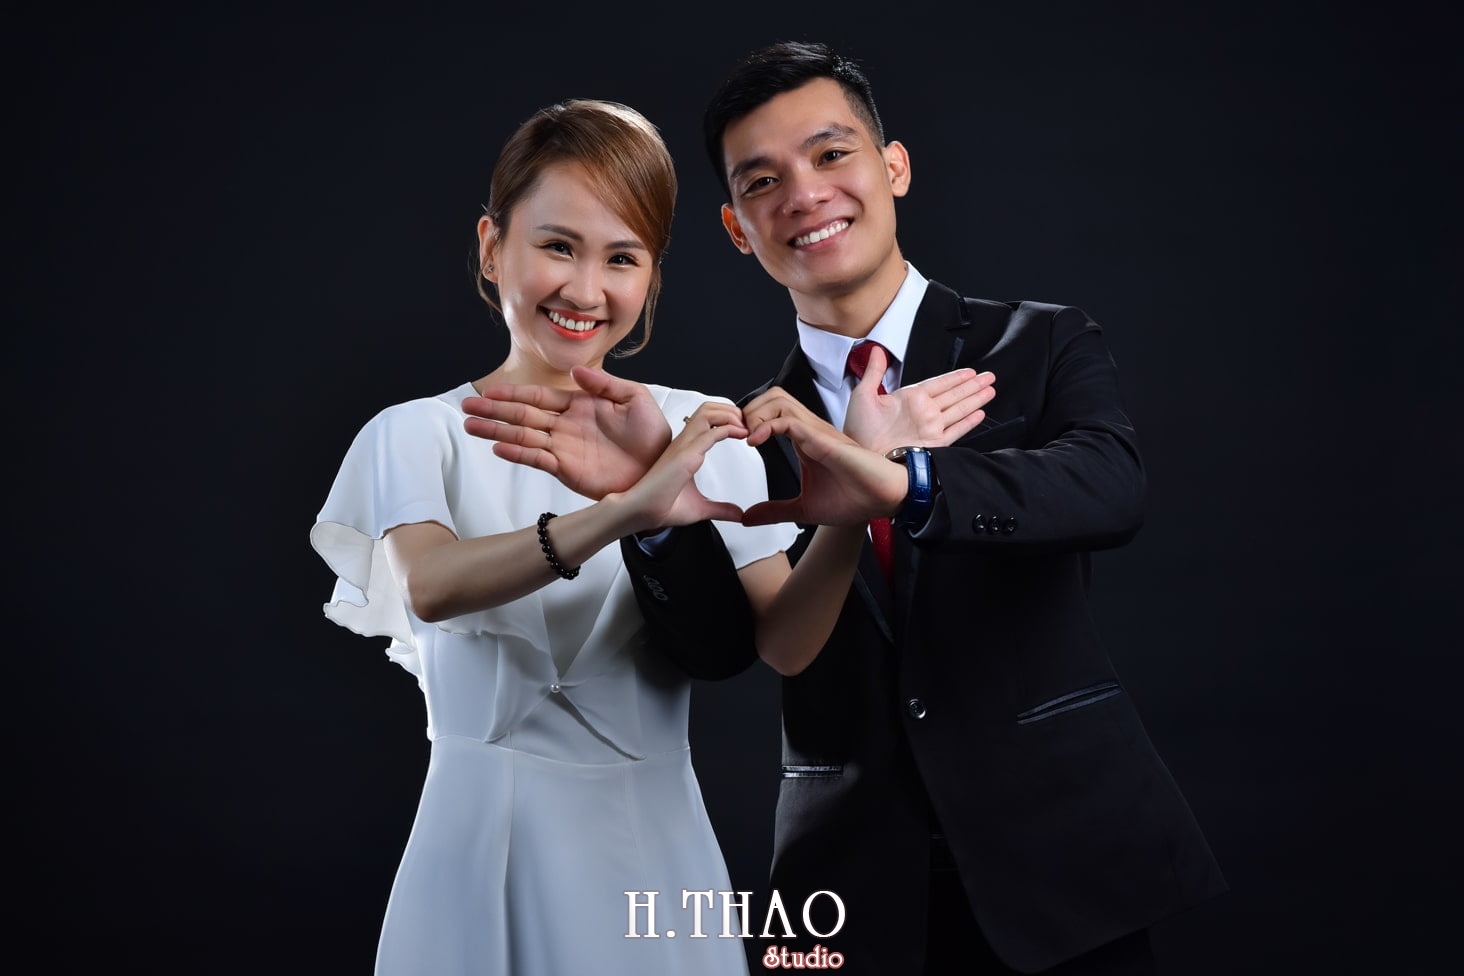 Anh couple 5 min - Concept chụp ảnh đôi hàn quốc HOT nhất hiện nay- HThao Studio